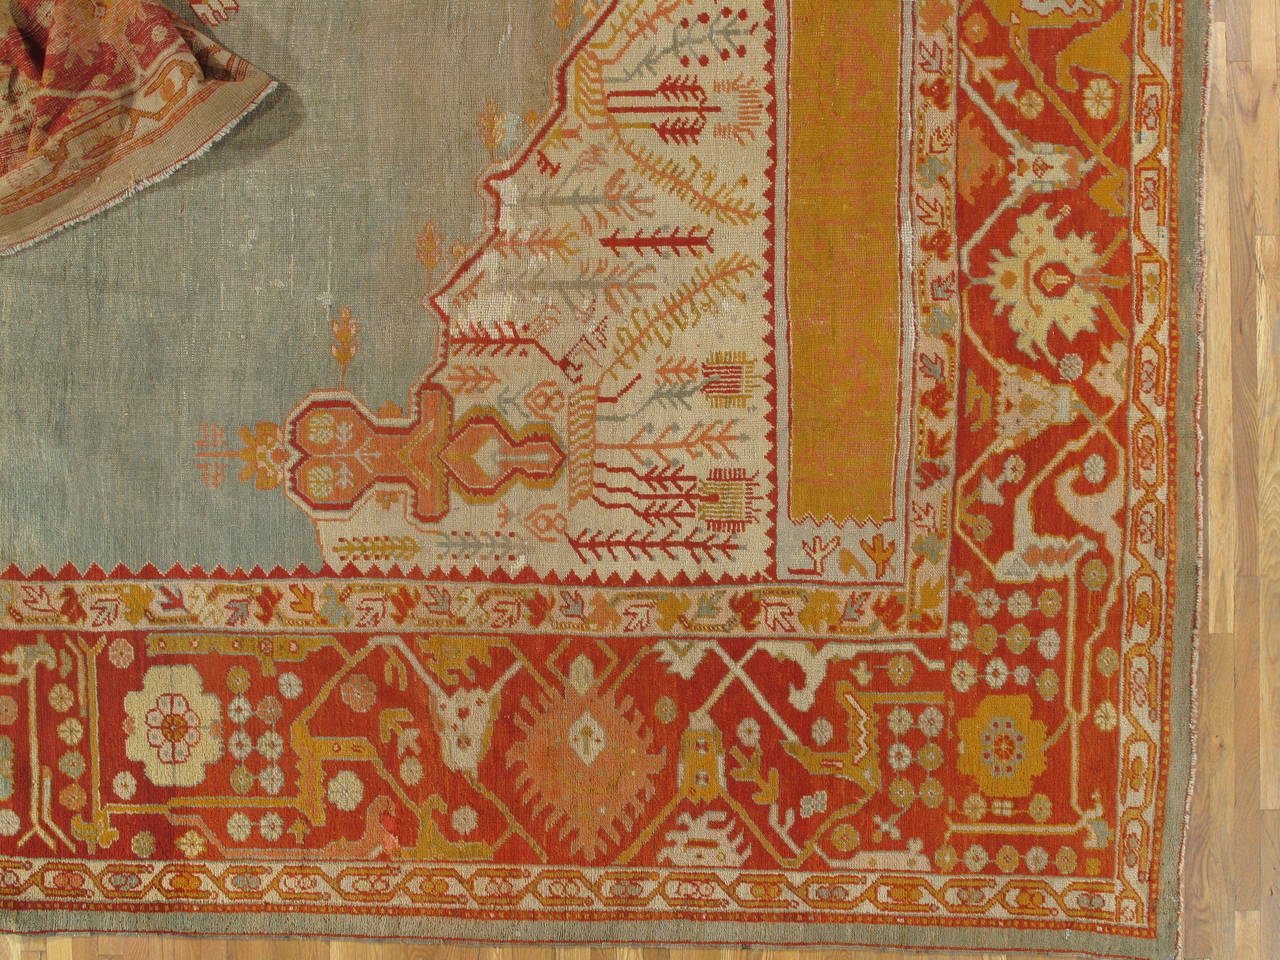 Westanatolien ist eine der größten Webereiregionen der Türkei. Seit dem 15. Jahrhundert stehen die türkischen Teppiche ganz oben auf der Liste der besten Orientteppiche. 
Oushak-Teppiche wie dieser sind auf dem heutigen hochdekorativen Markt sehr